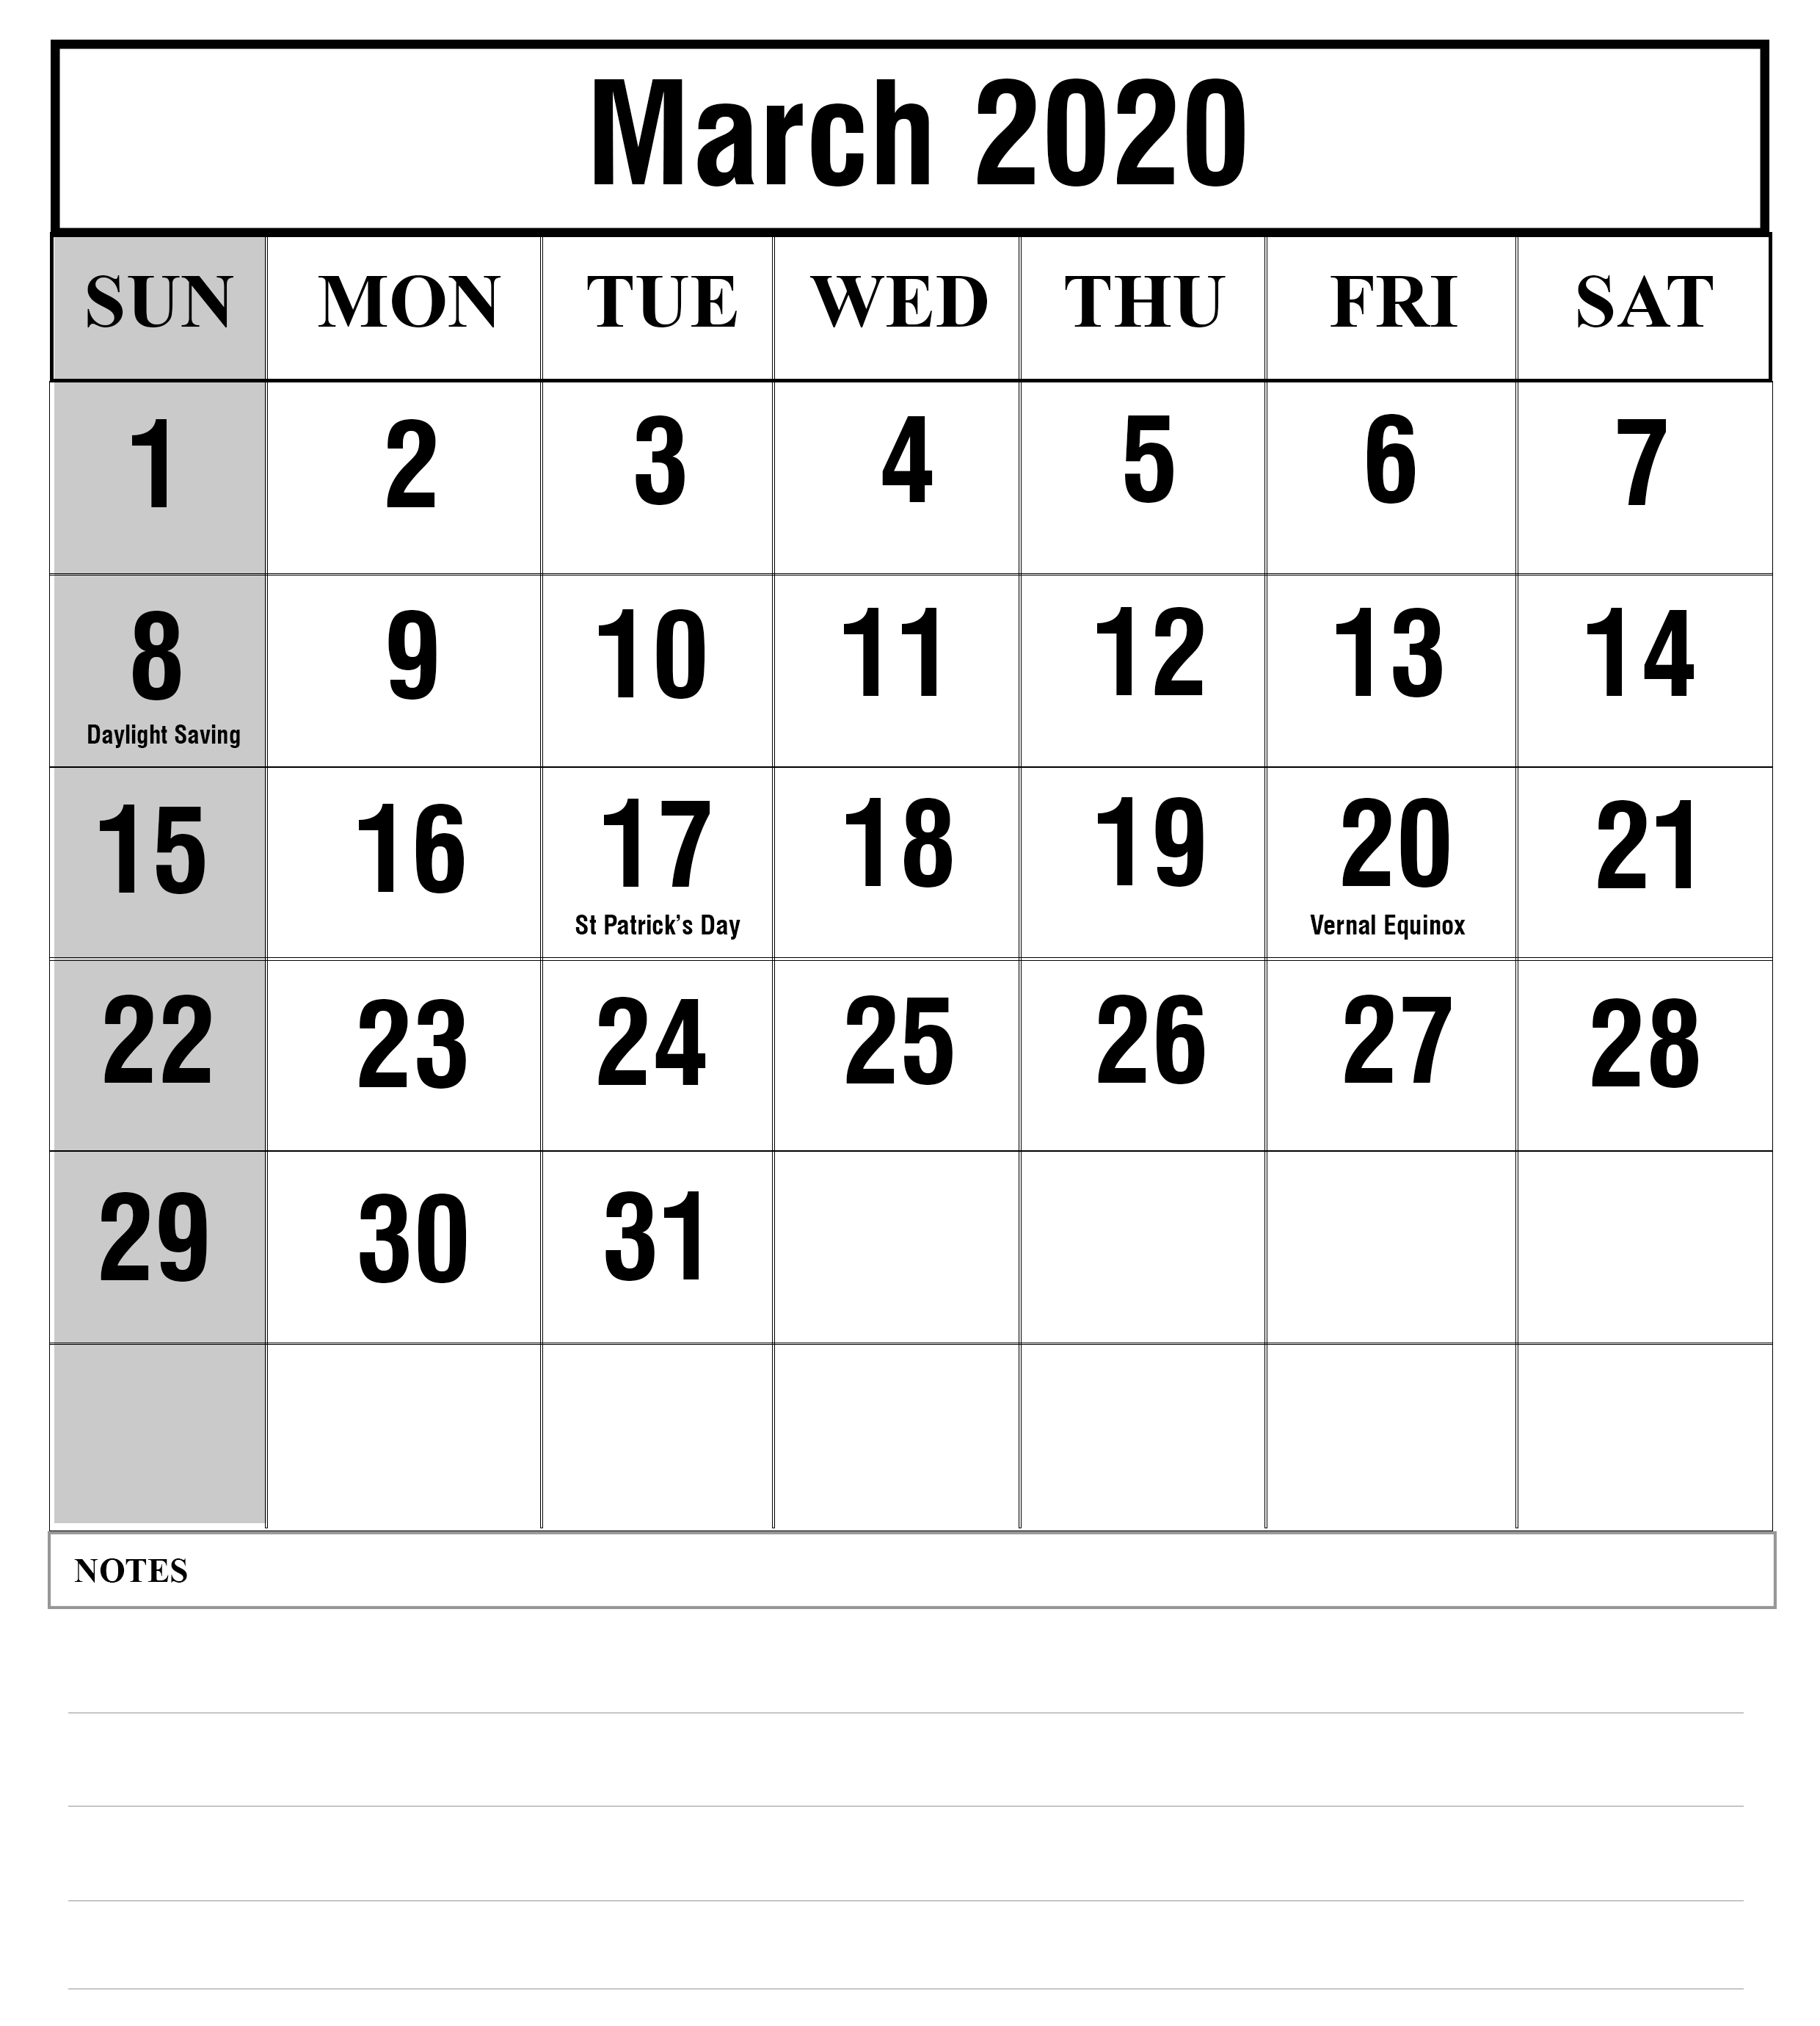 2019 Calendar 2020 Printable With Holidays - Free Printable